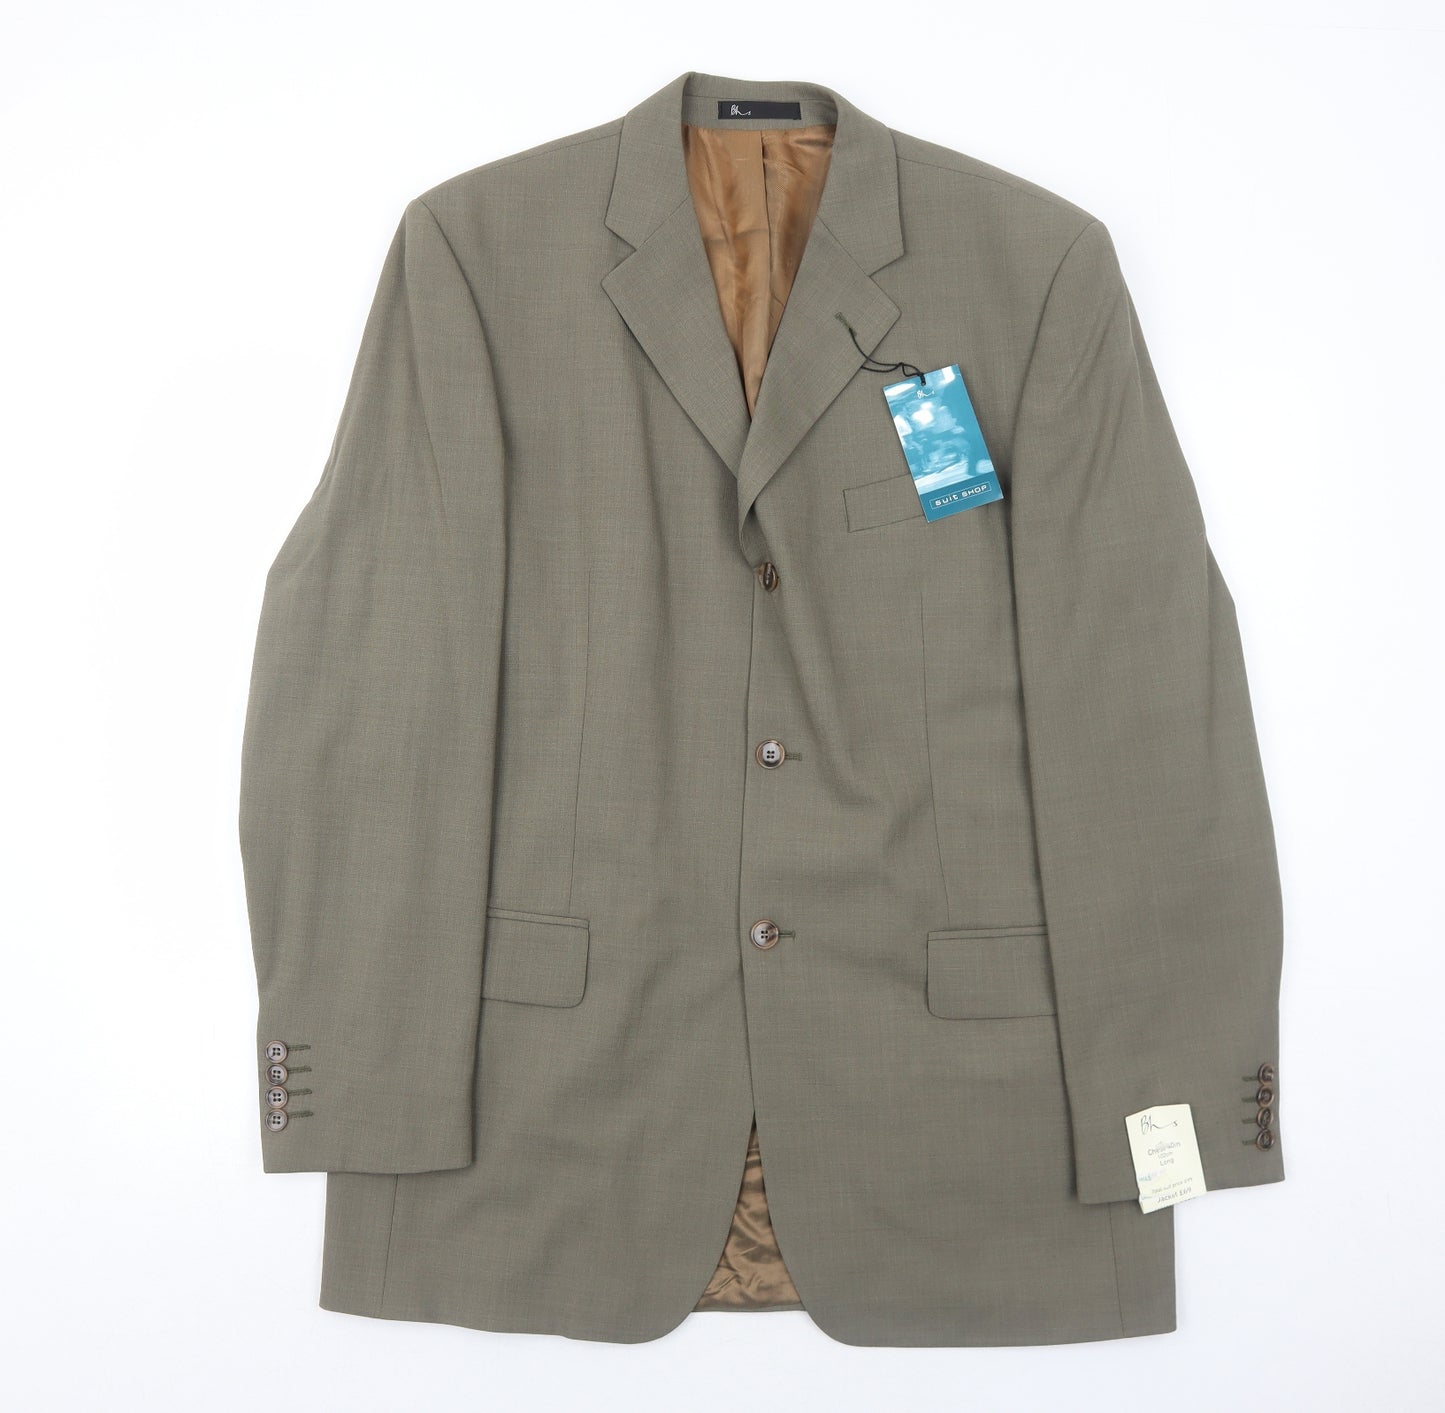 BHS Mens Brown Wool Jacket Suit Jacket Size 40 Regular